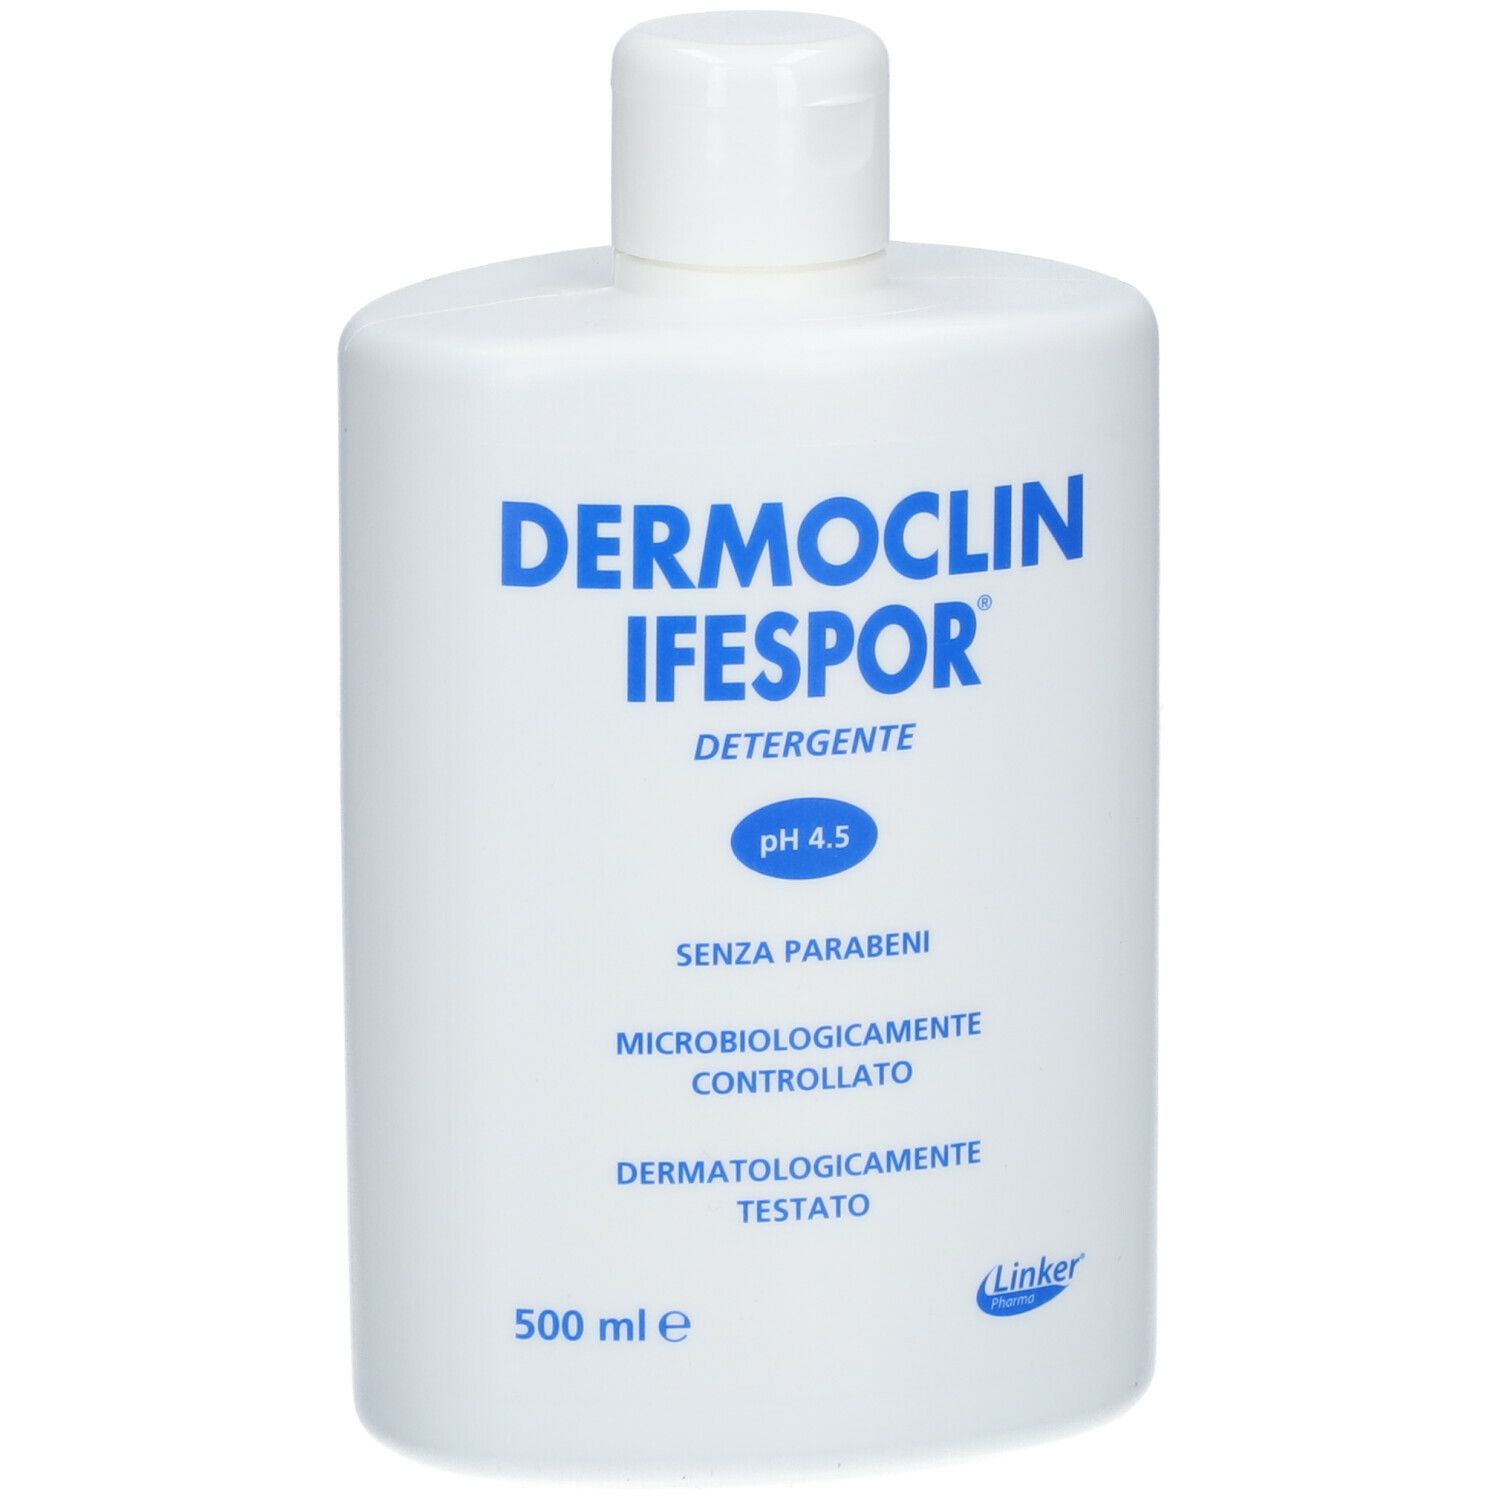 Dermoclin Ifespor®